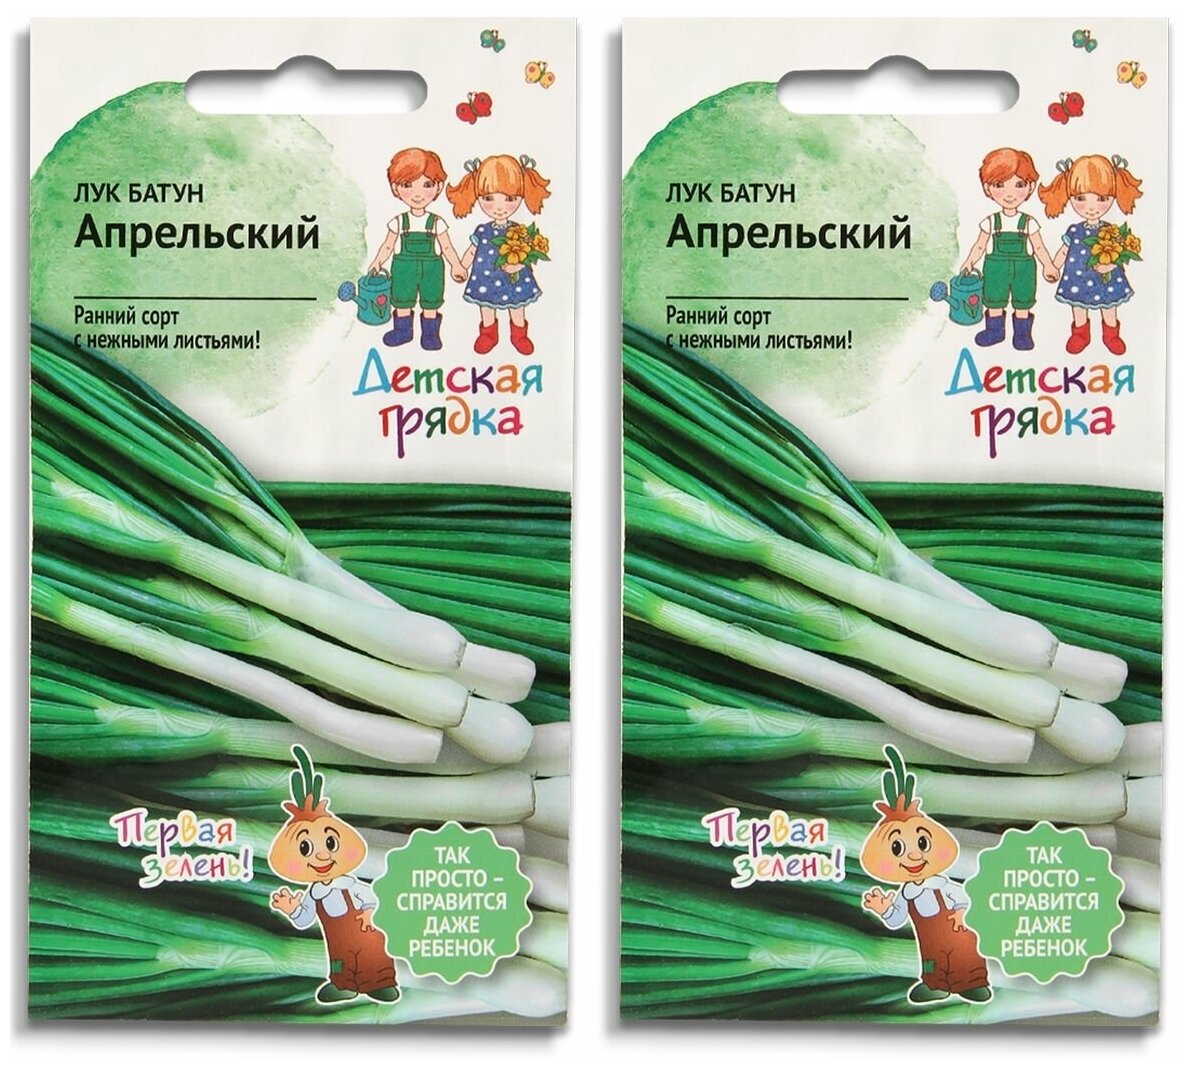 Набор семян Лук зеленый батун Апрельский 0.5 г Детская грядка - 2 уп.